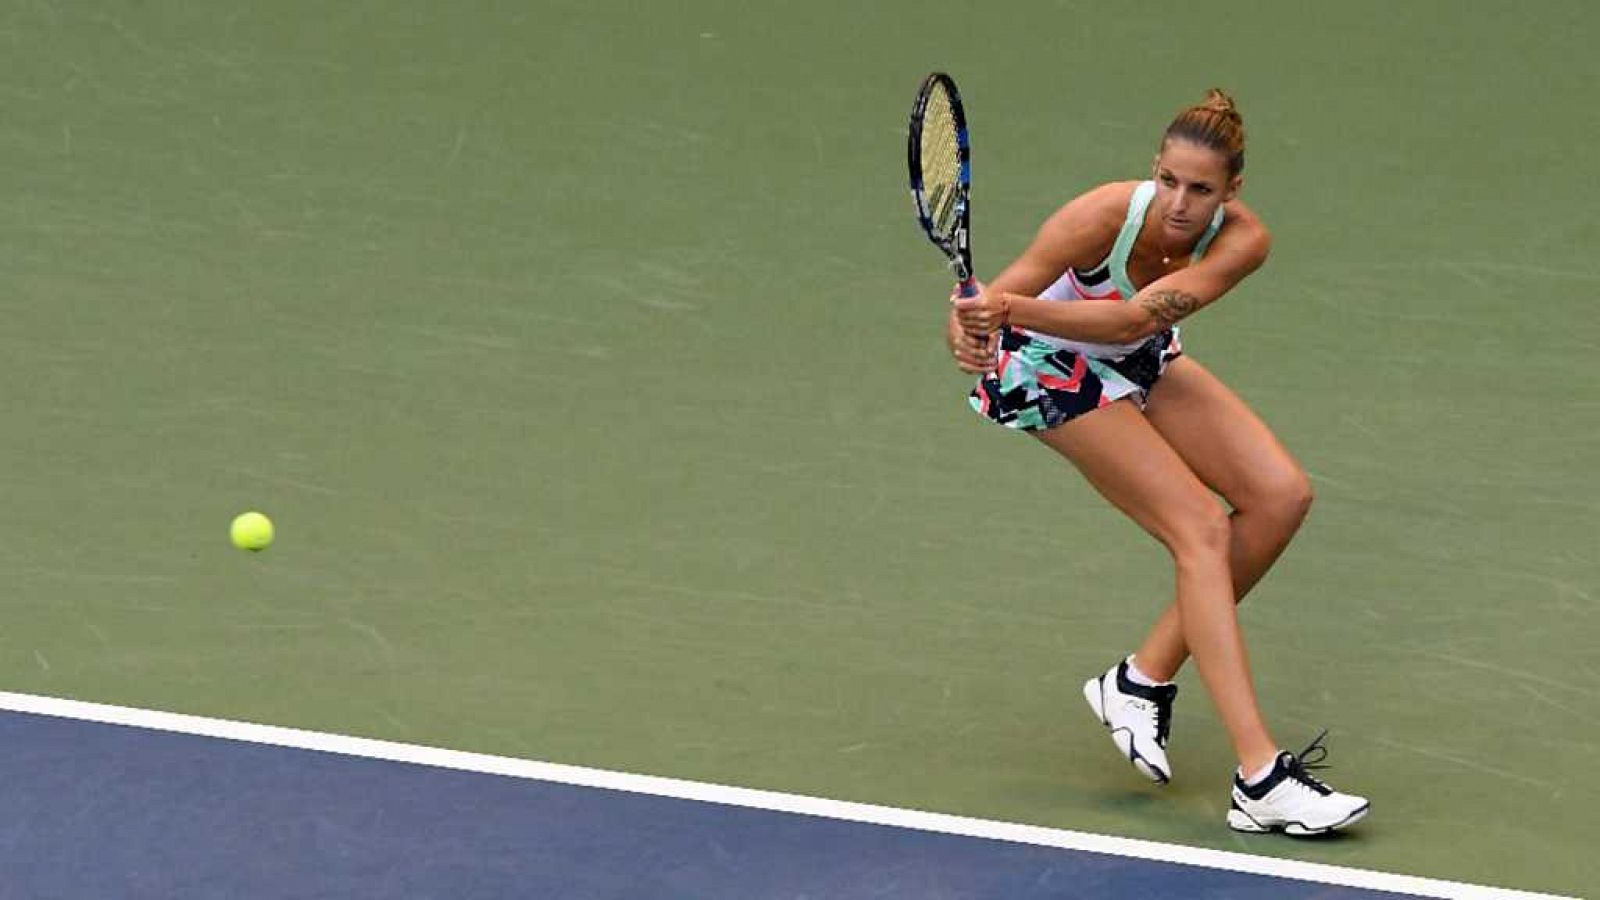 Tenis - WTA Torneo Tokio (Japón): K. Pliskova - M. Linette